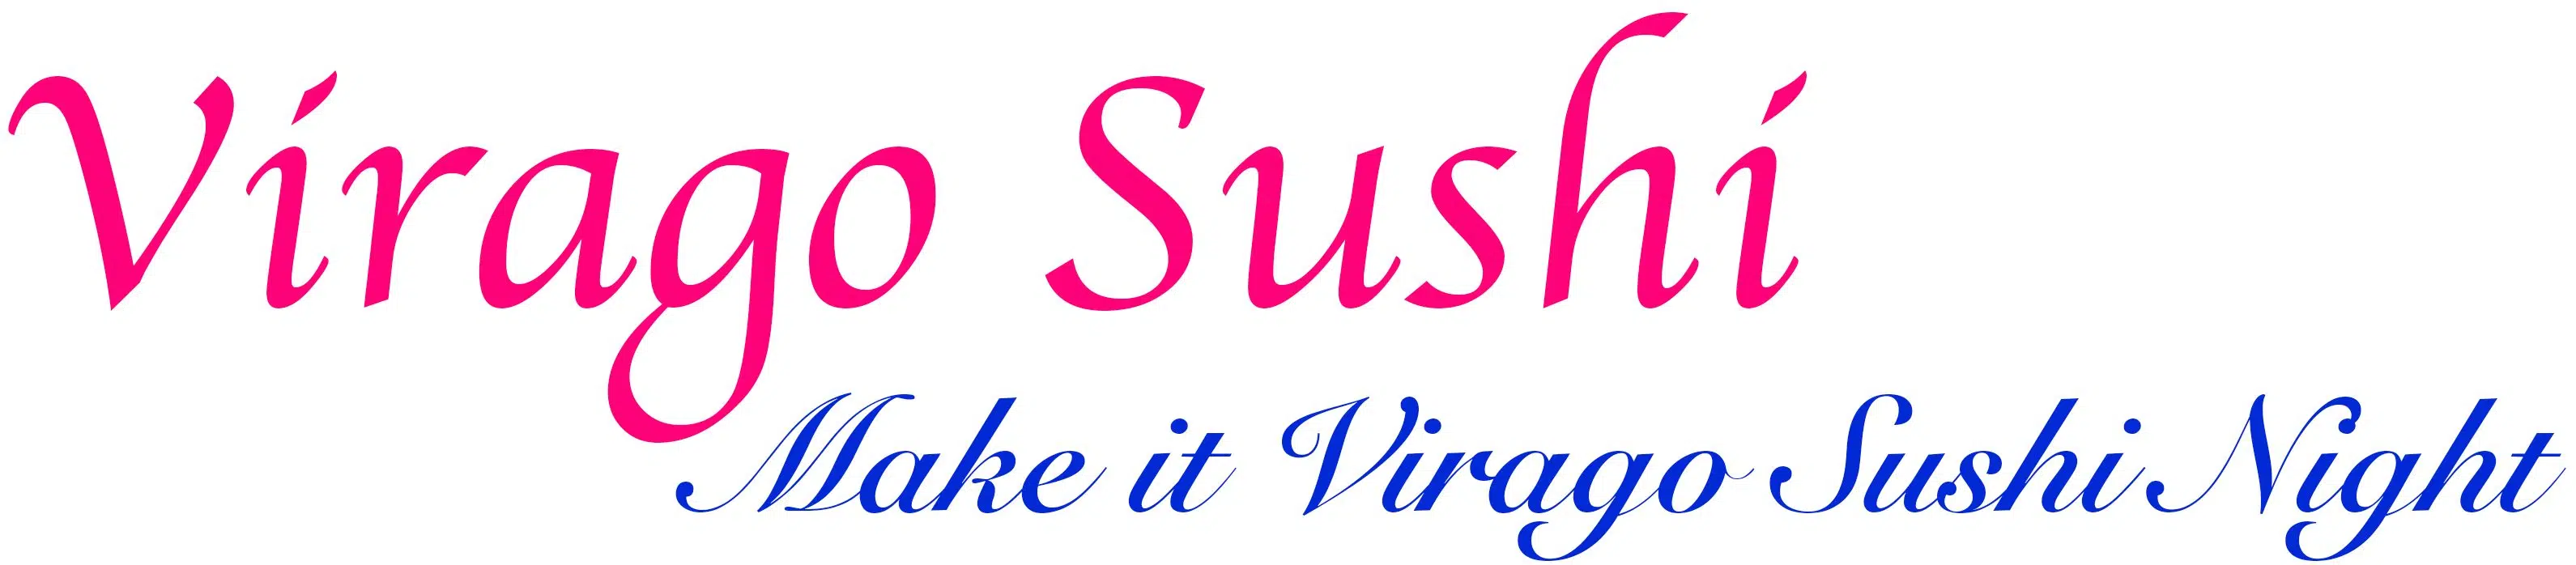 Virago Sushi